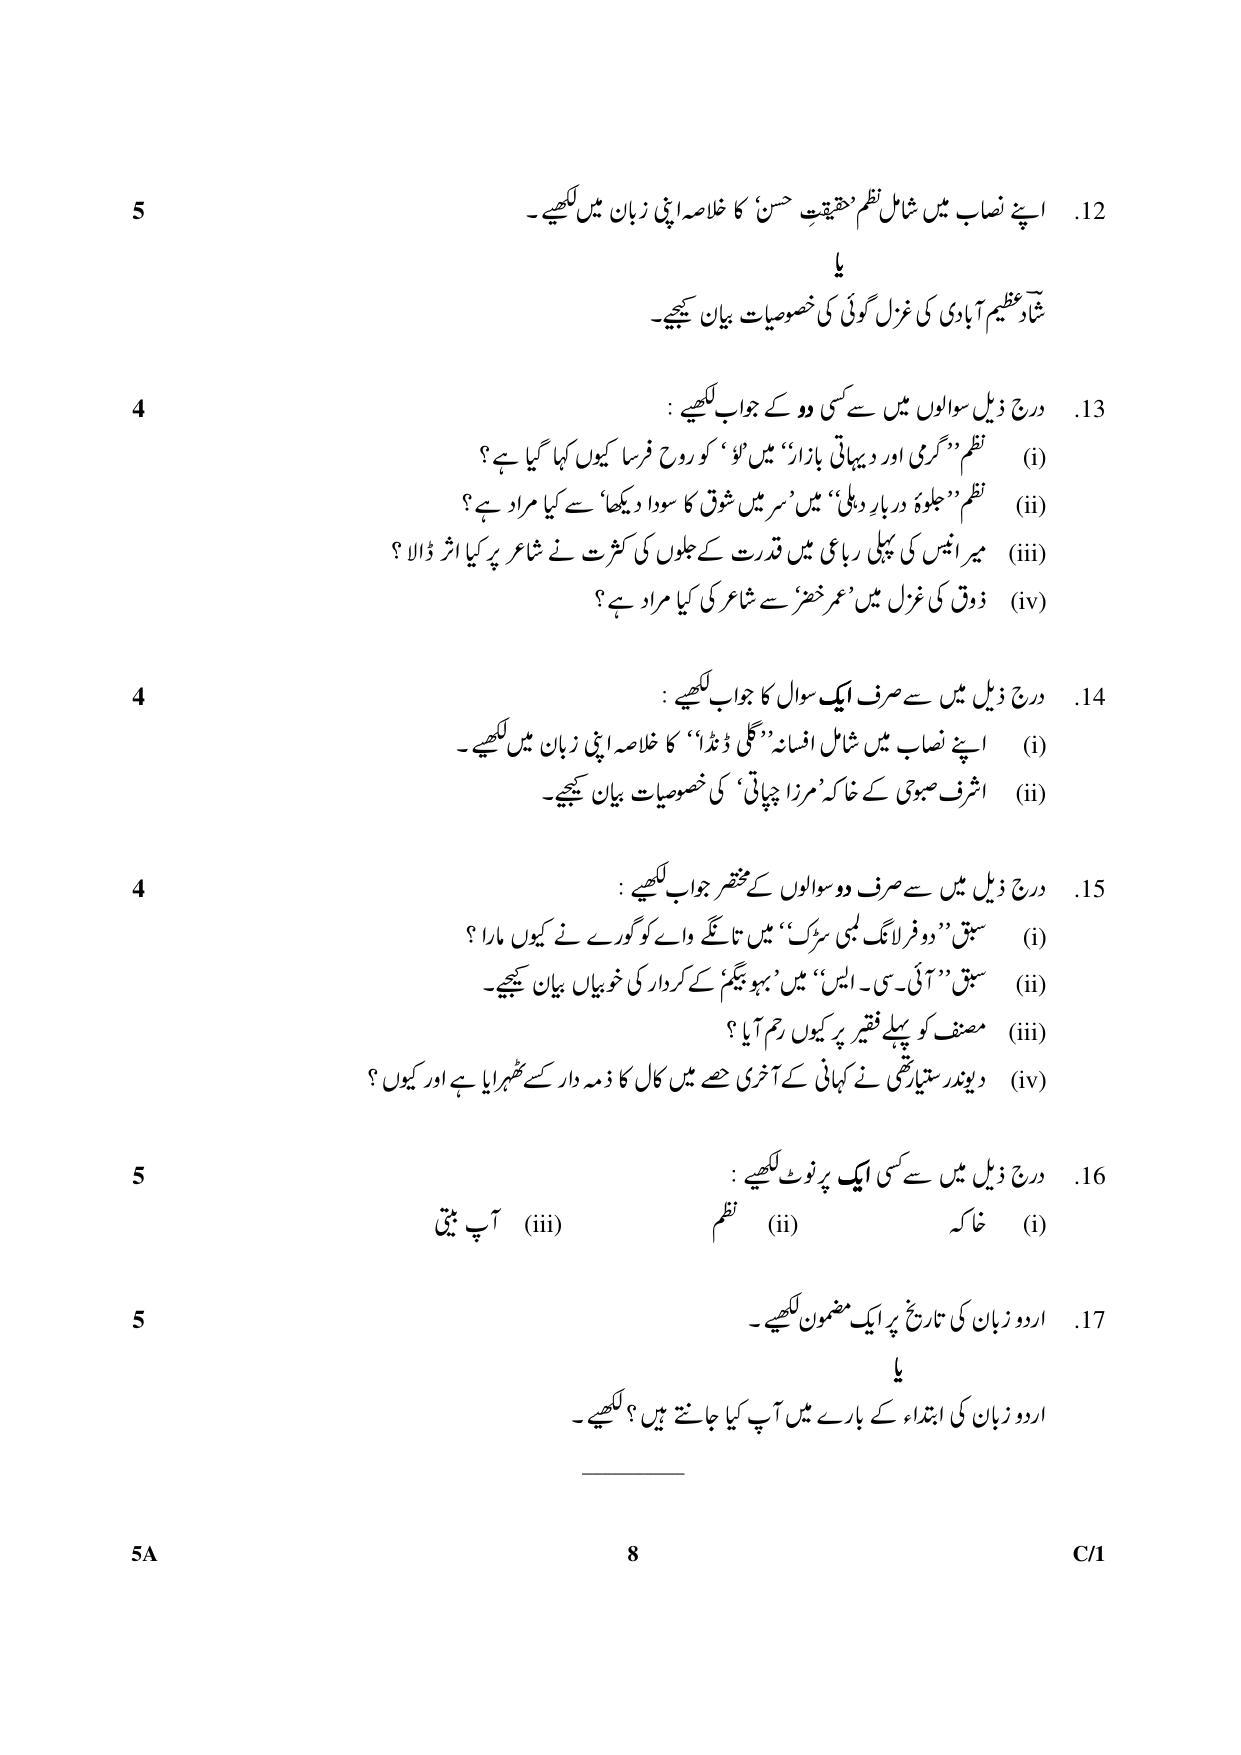 CBSE Class 10 5A Urdu (Course A) 2018 Compartment Question Paper - Page 8